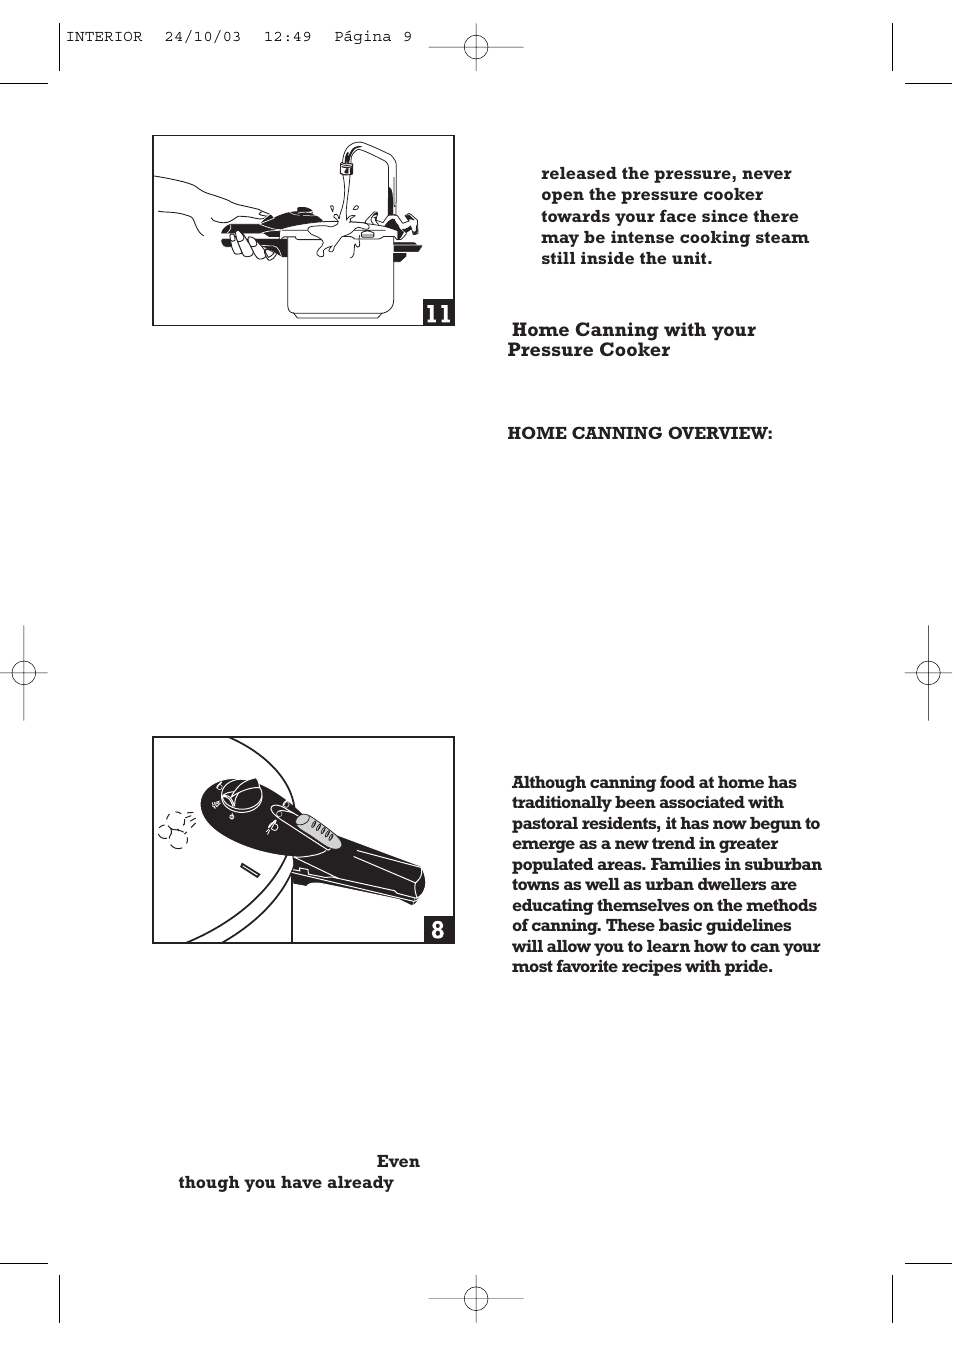 Fagor America FAGOR SPLENDID PRESSURE COOKER User Manual | Page 9 / 68